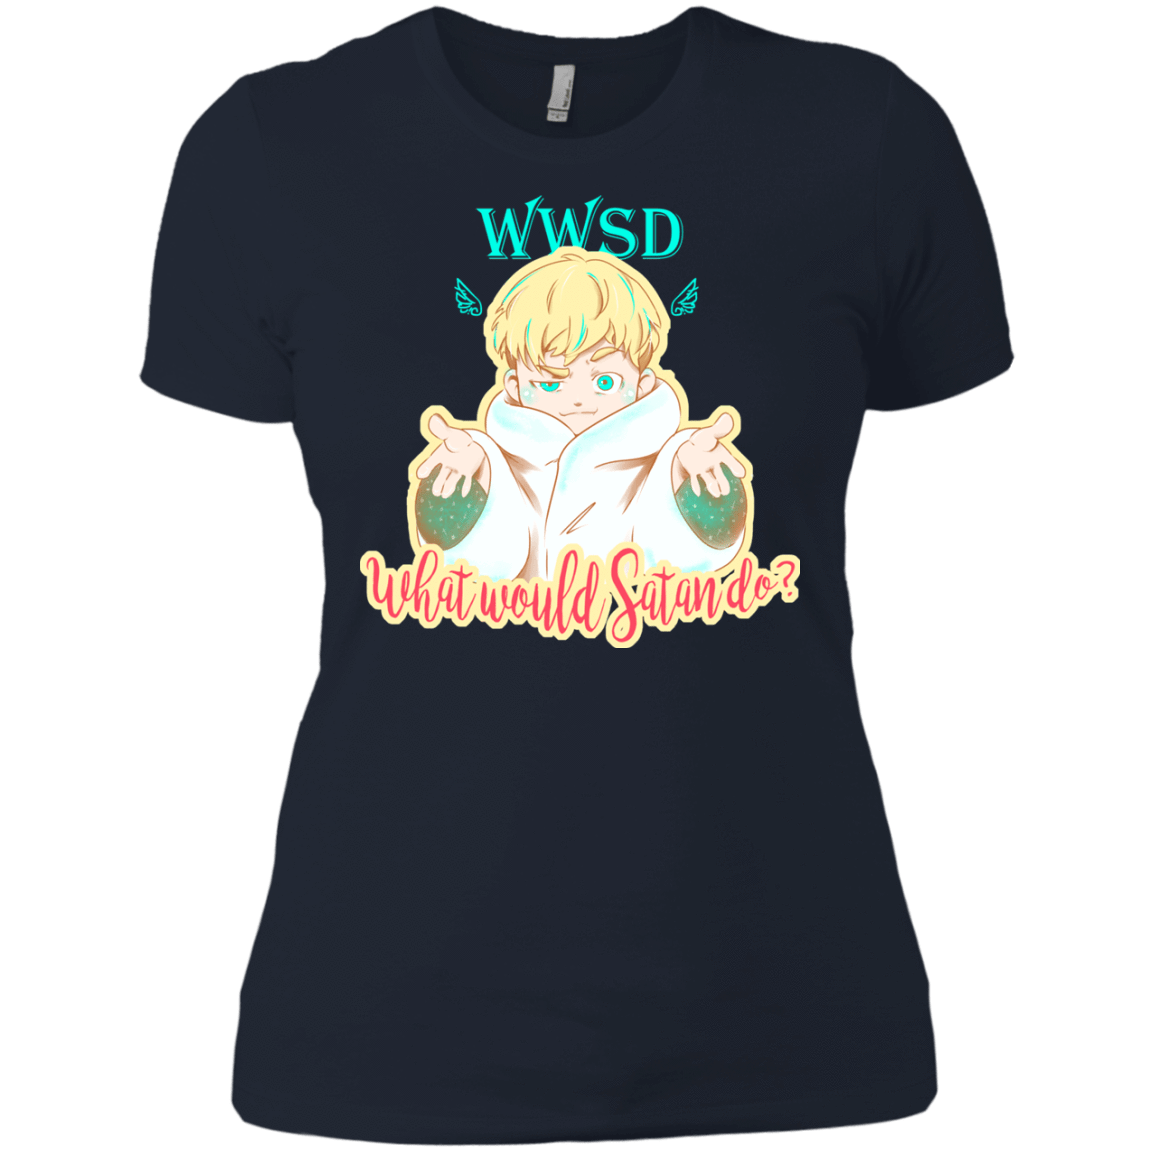 T-Shirts Midnight Navy / X-Small Ryo Women's Premium T-Shirt